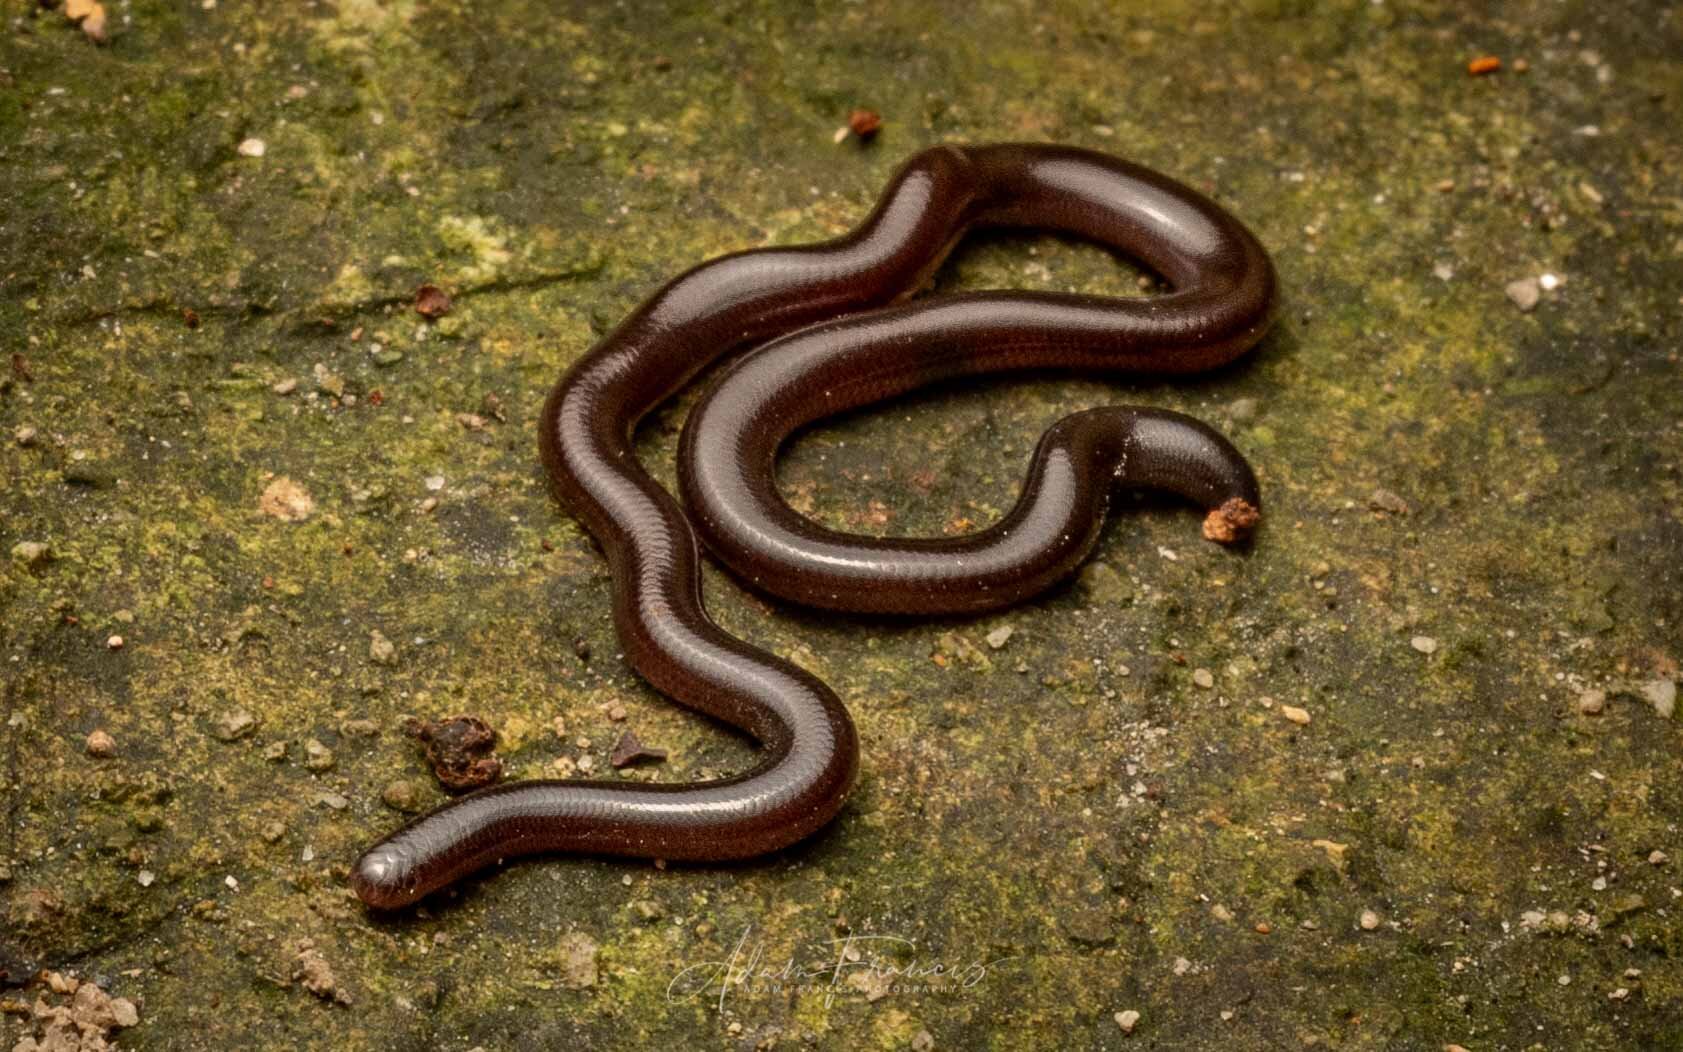 Common Blind Snake - Indotyphlops braminus